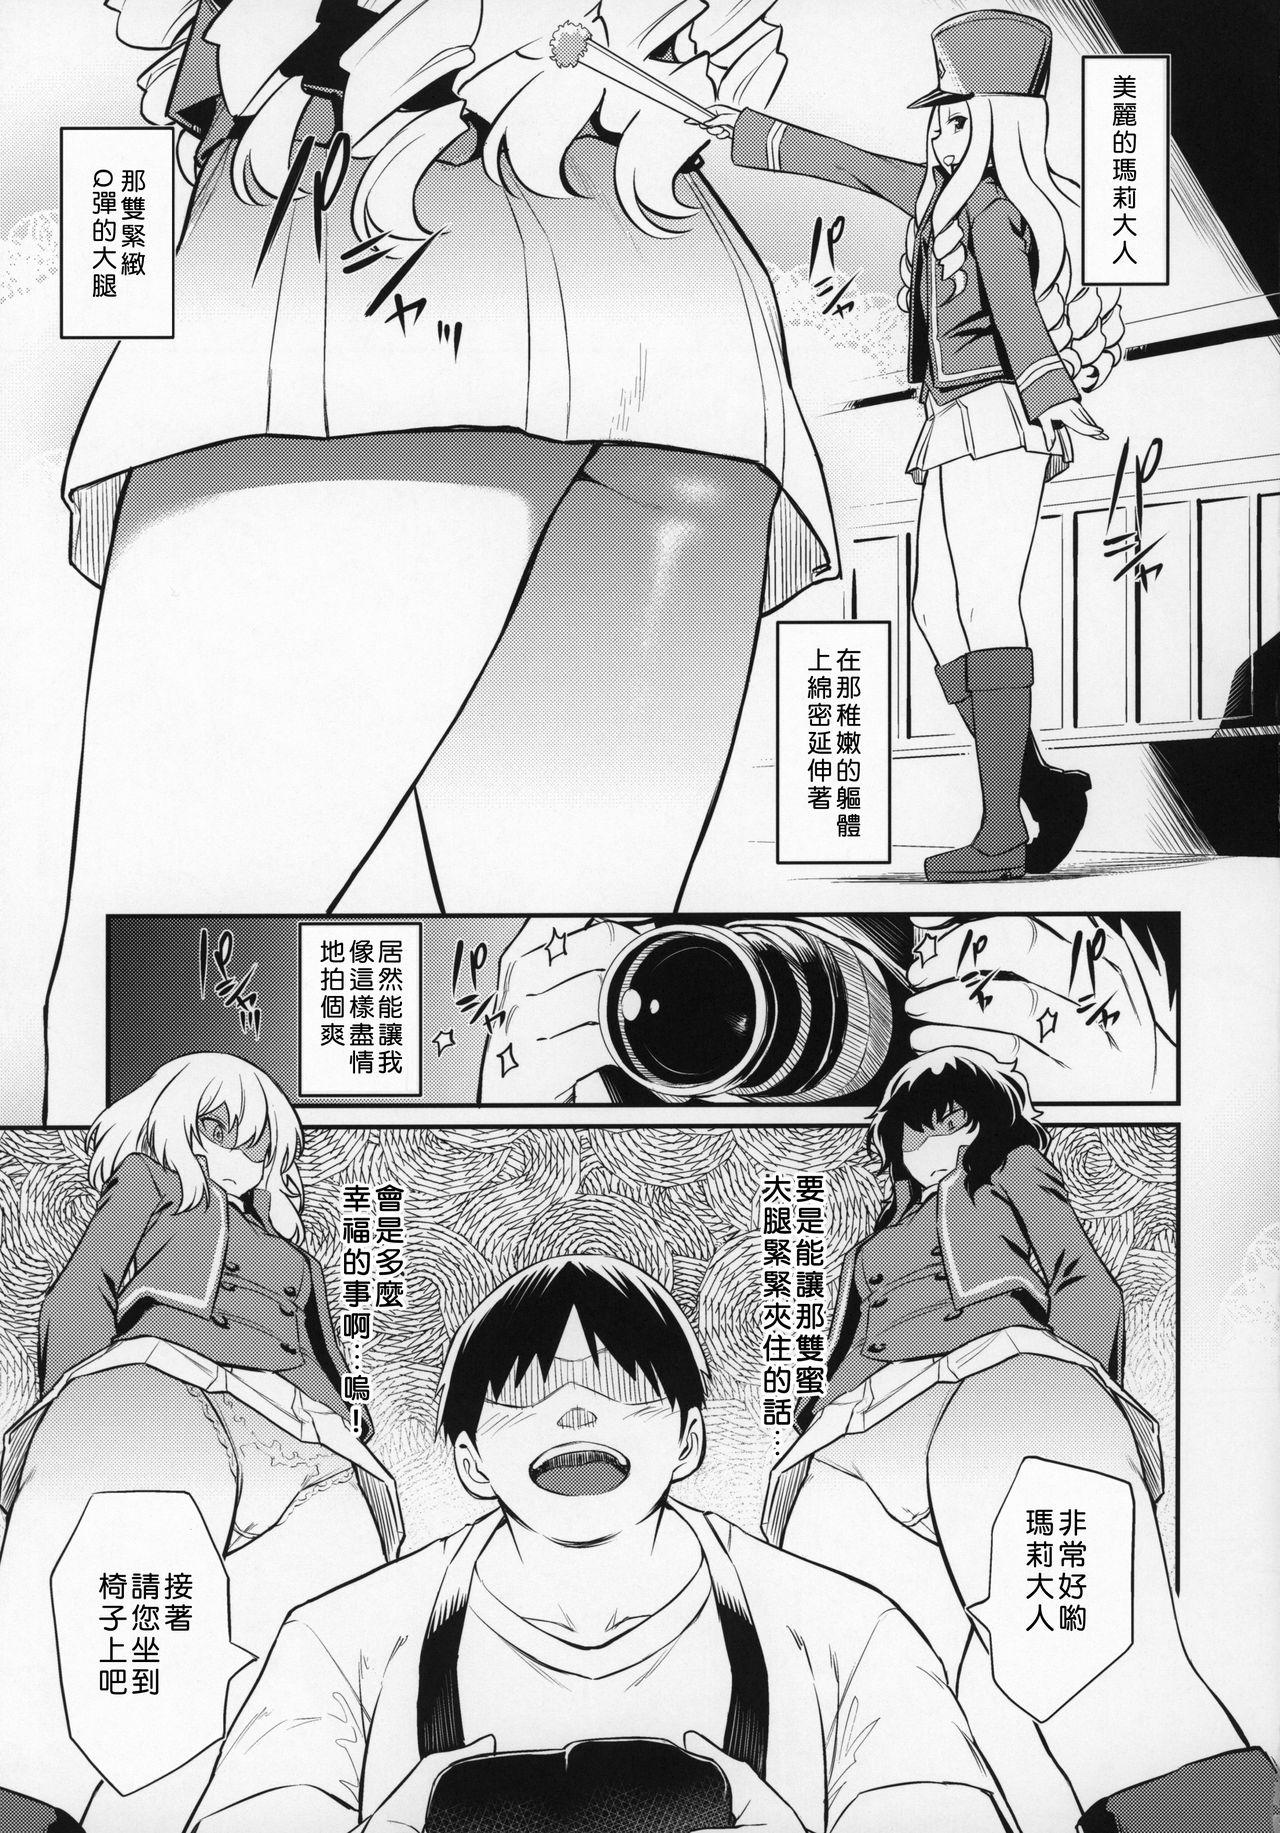 Slut Marie-sama no Sankakujime - Girls und panzer Behind - Page 4